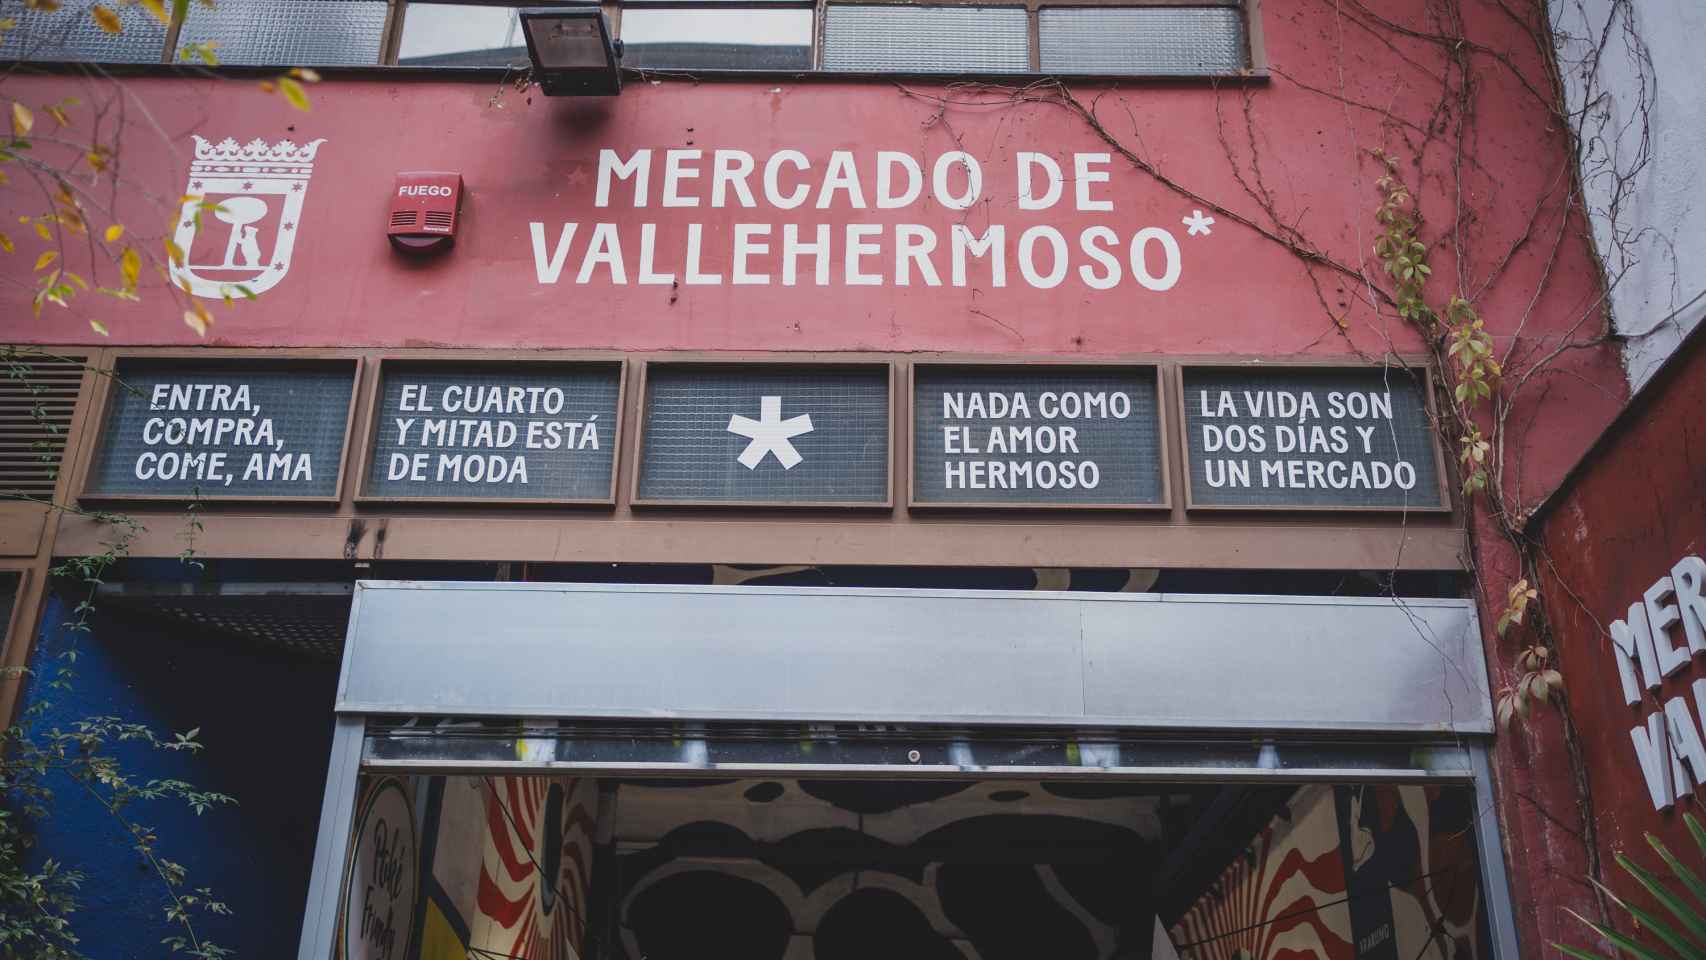 La fachada color carmesí del Mercado de Vallehermoso.